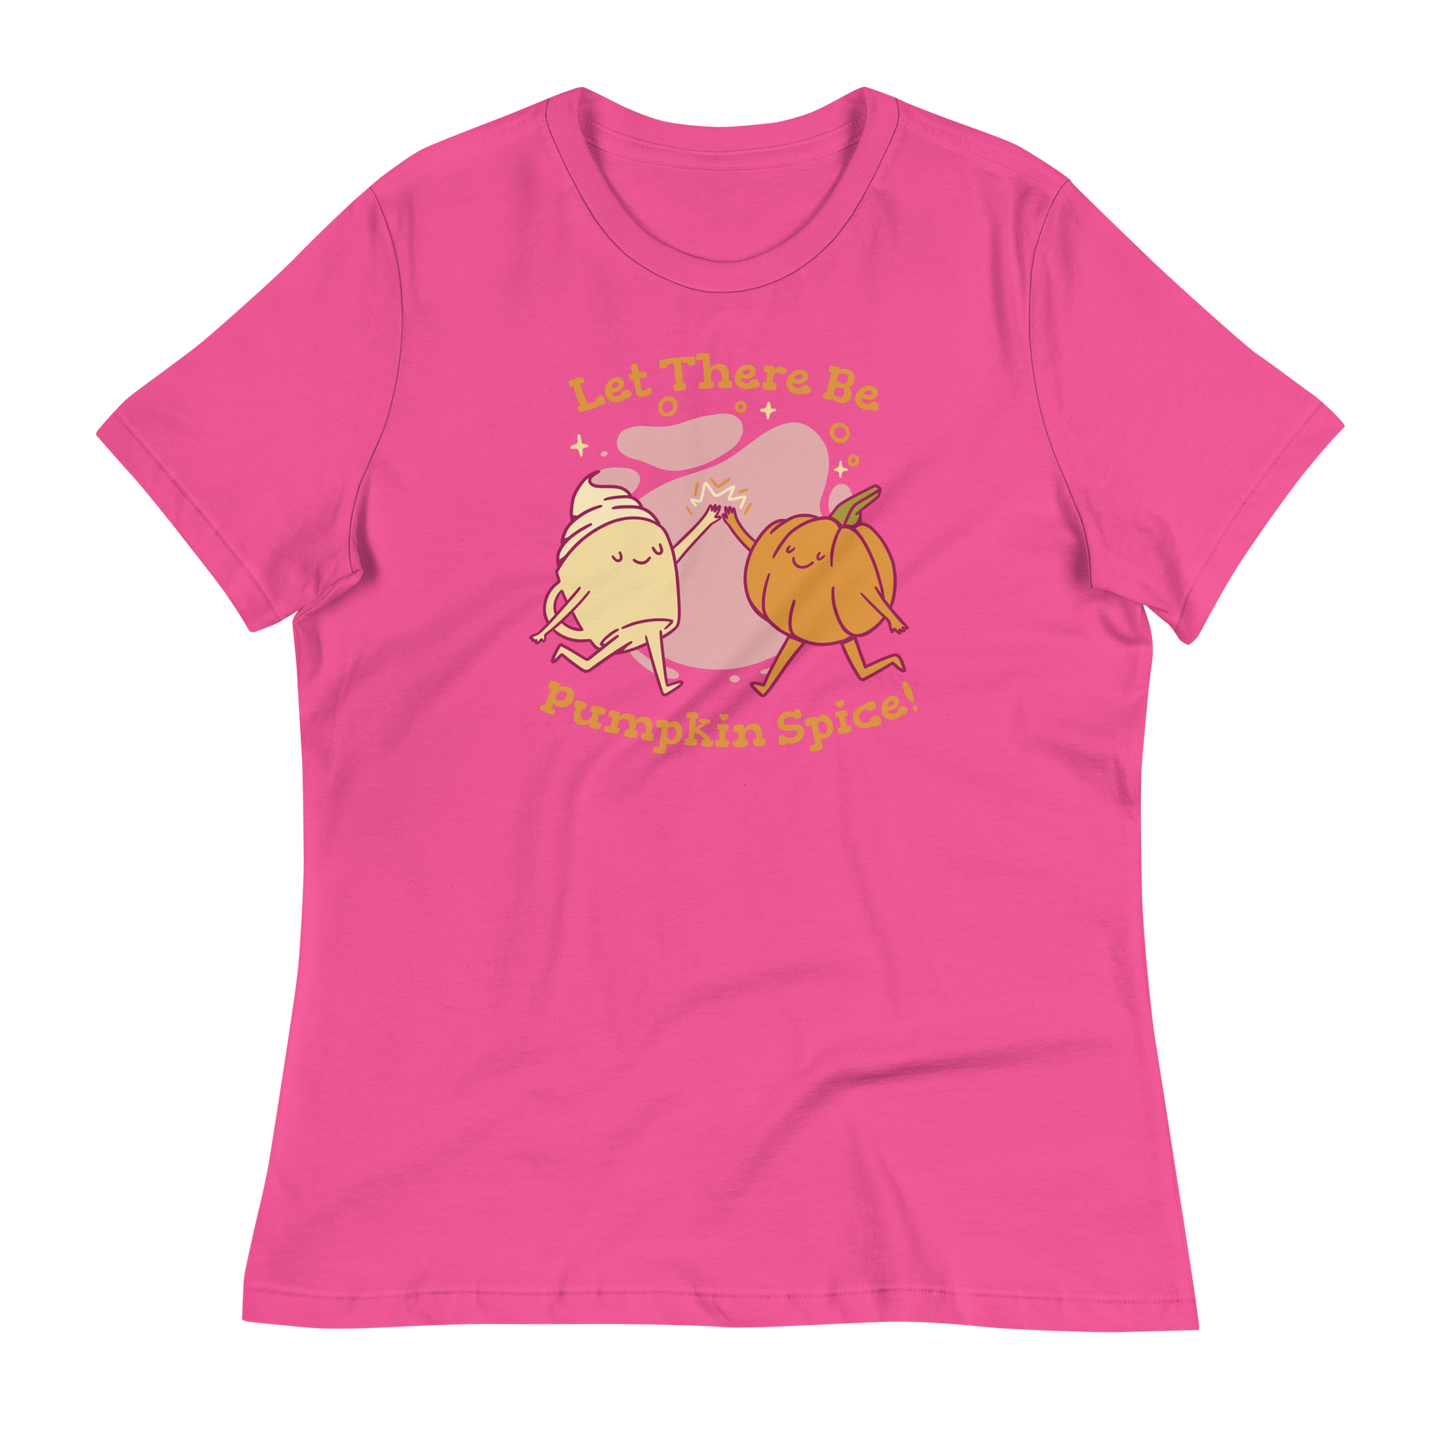 Pumpkin Spice Women's Relaxed T-Shirt